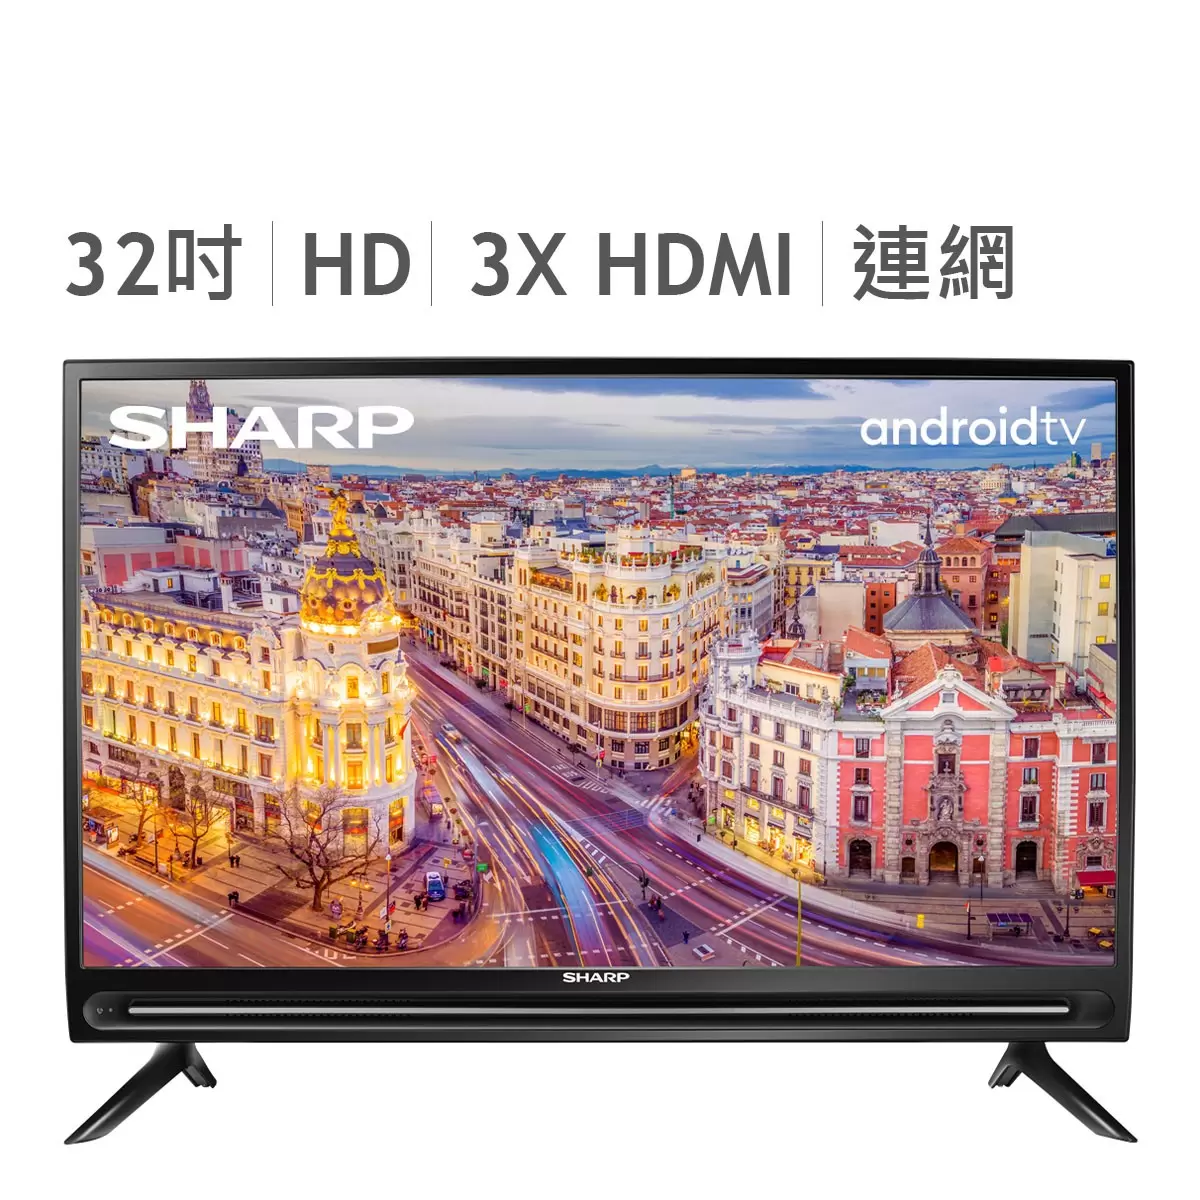 夏普 32吋 HD 液晶顯示器 2T-C32BE1T 5台